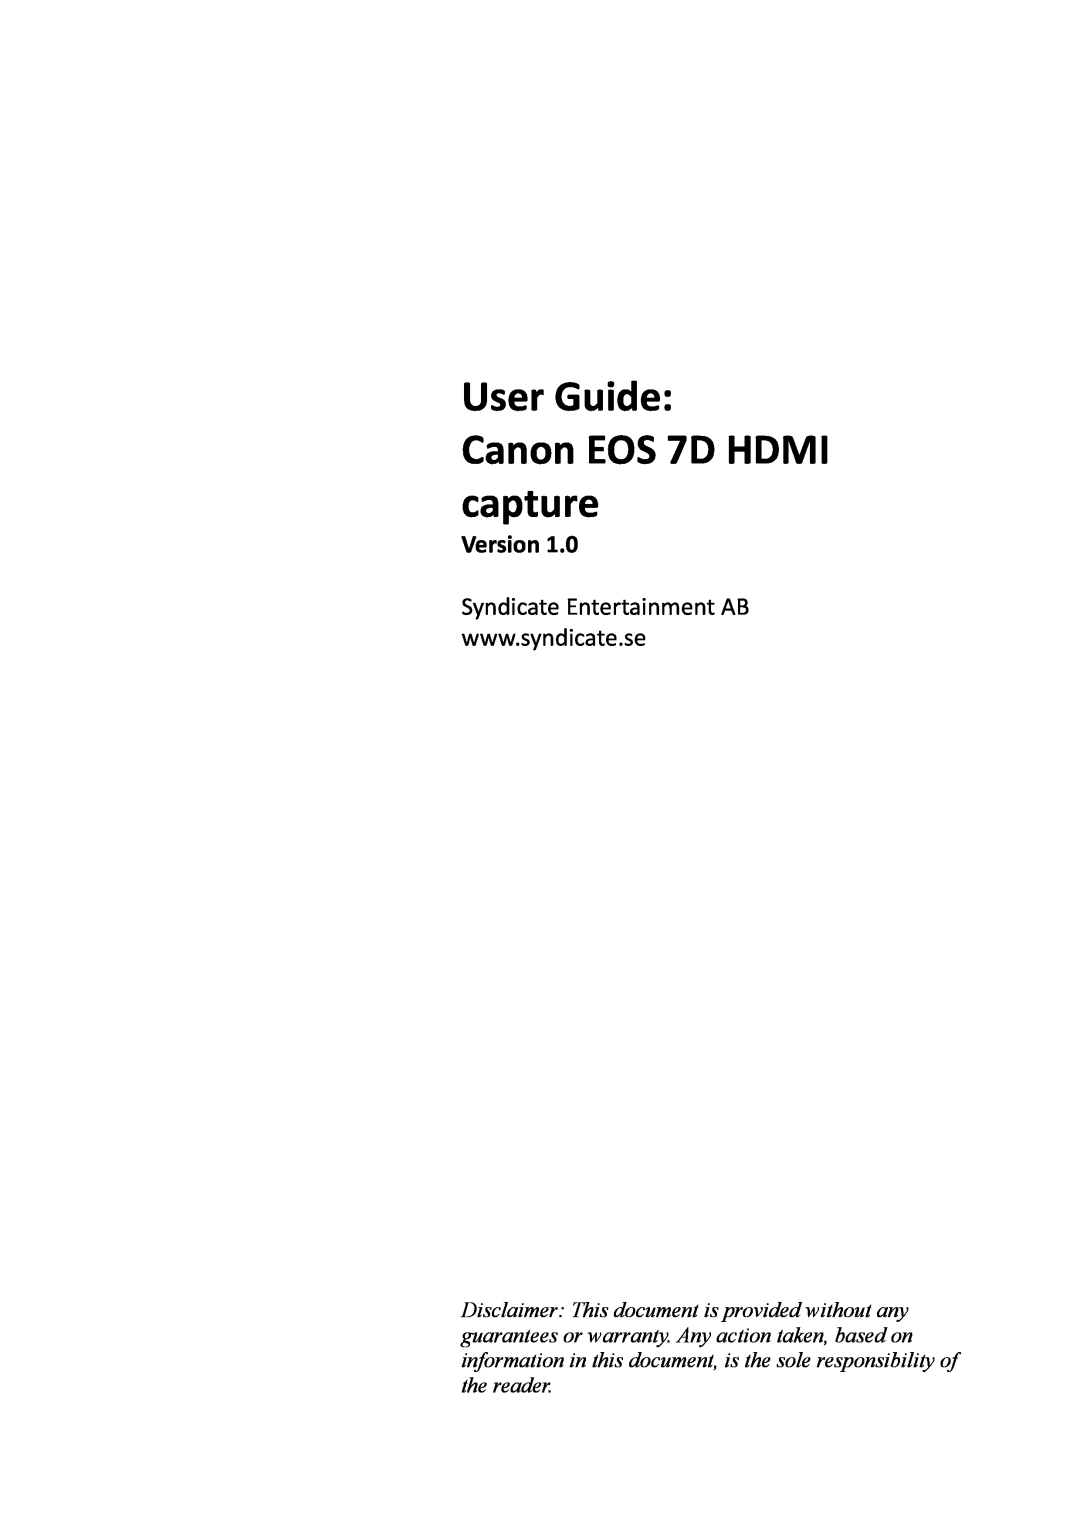 Canon warranty User Guide Canon EOS 7D HDMI capture, Version 